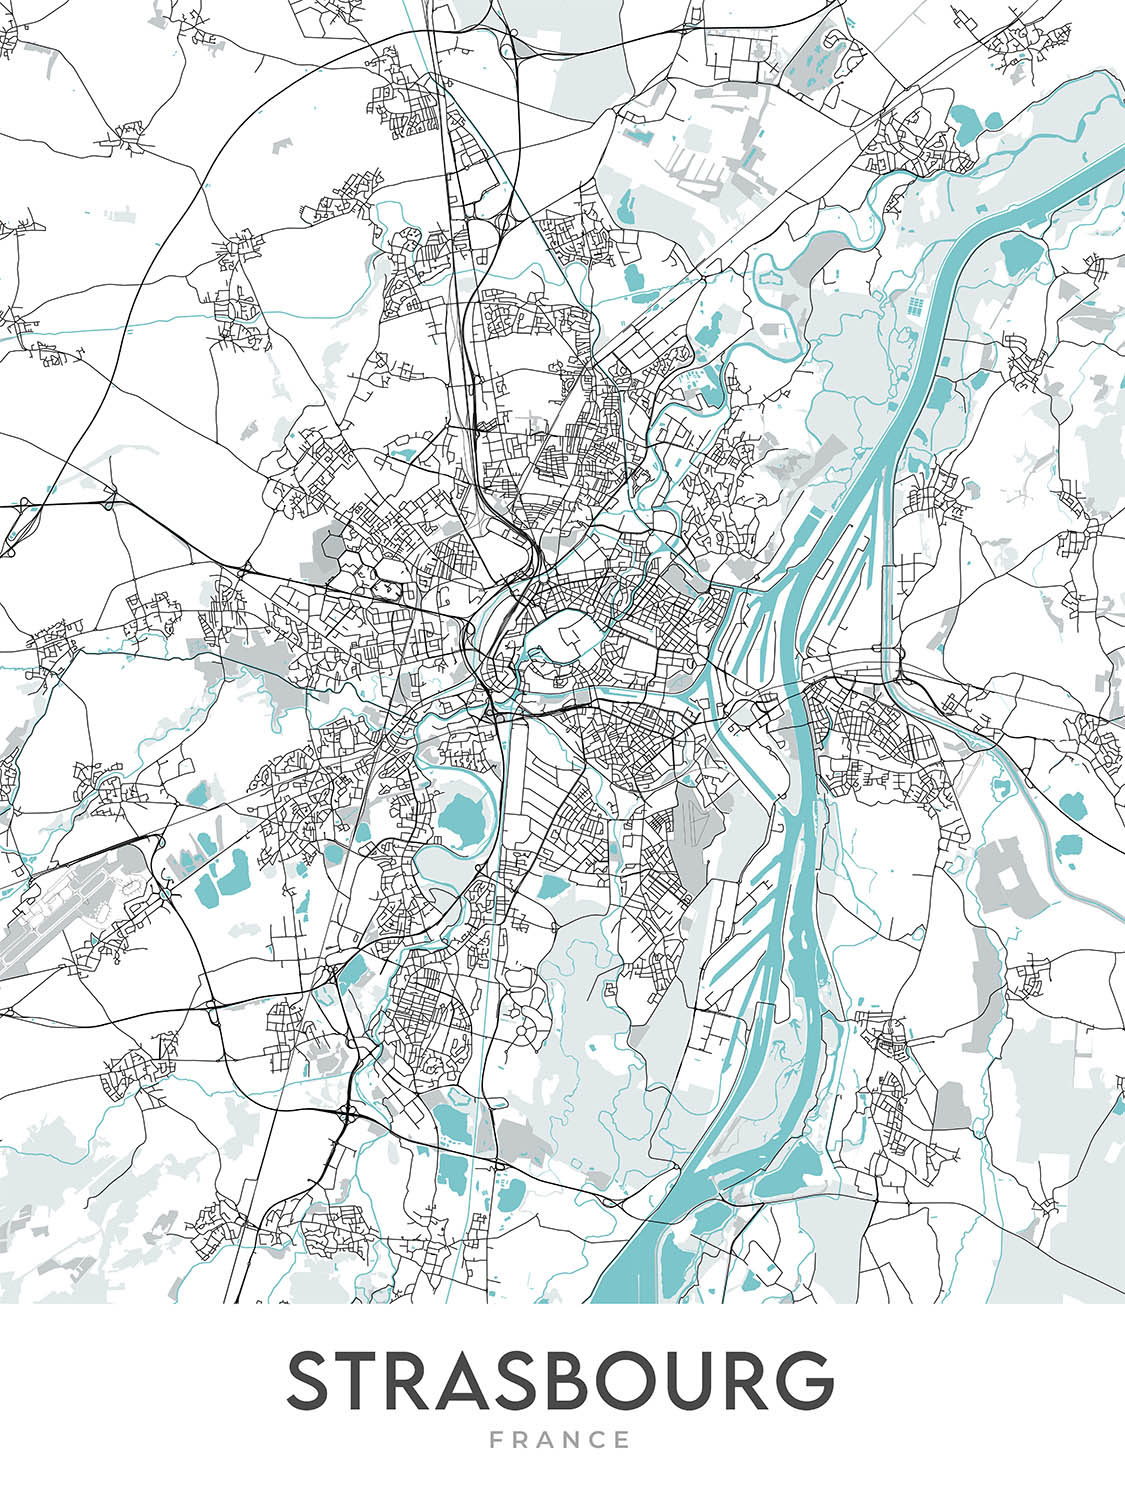 Moderner Stadtplan von Straßburg, Frankreich: Kathedrale, Rohan, Parc, Gare, A35